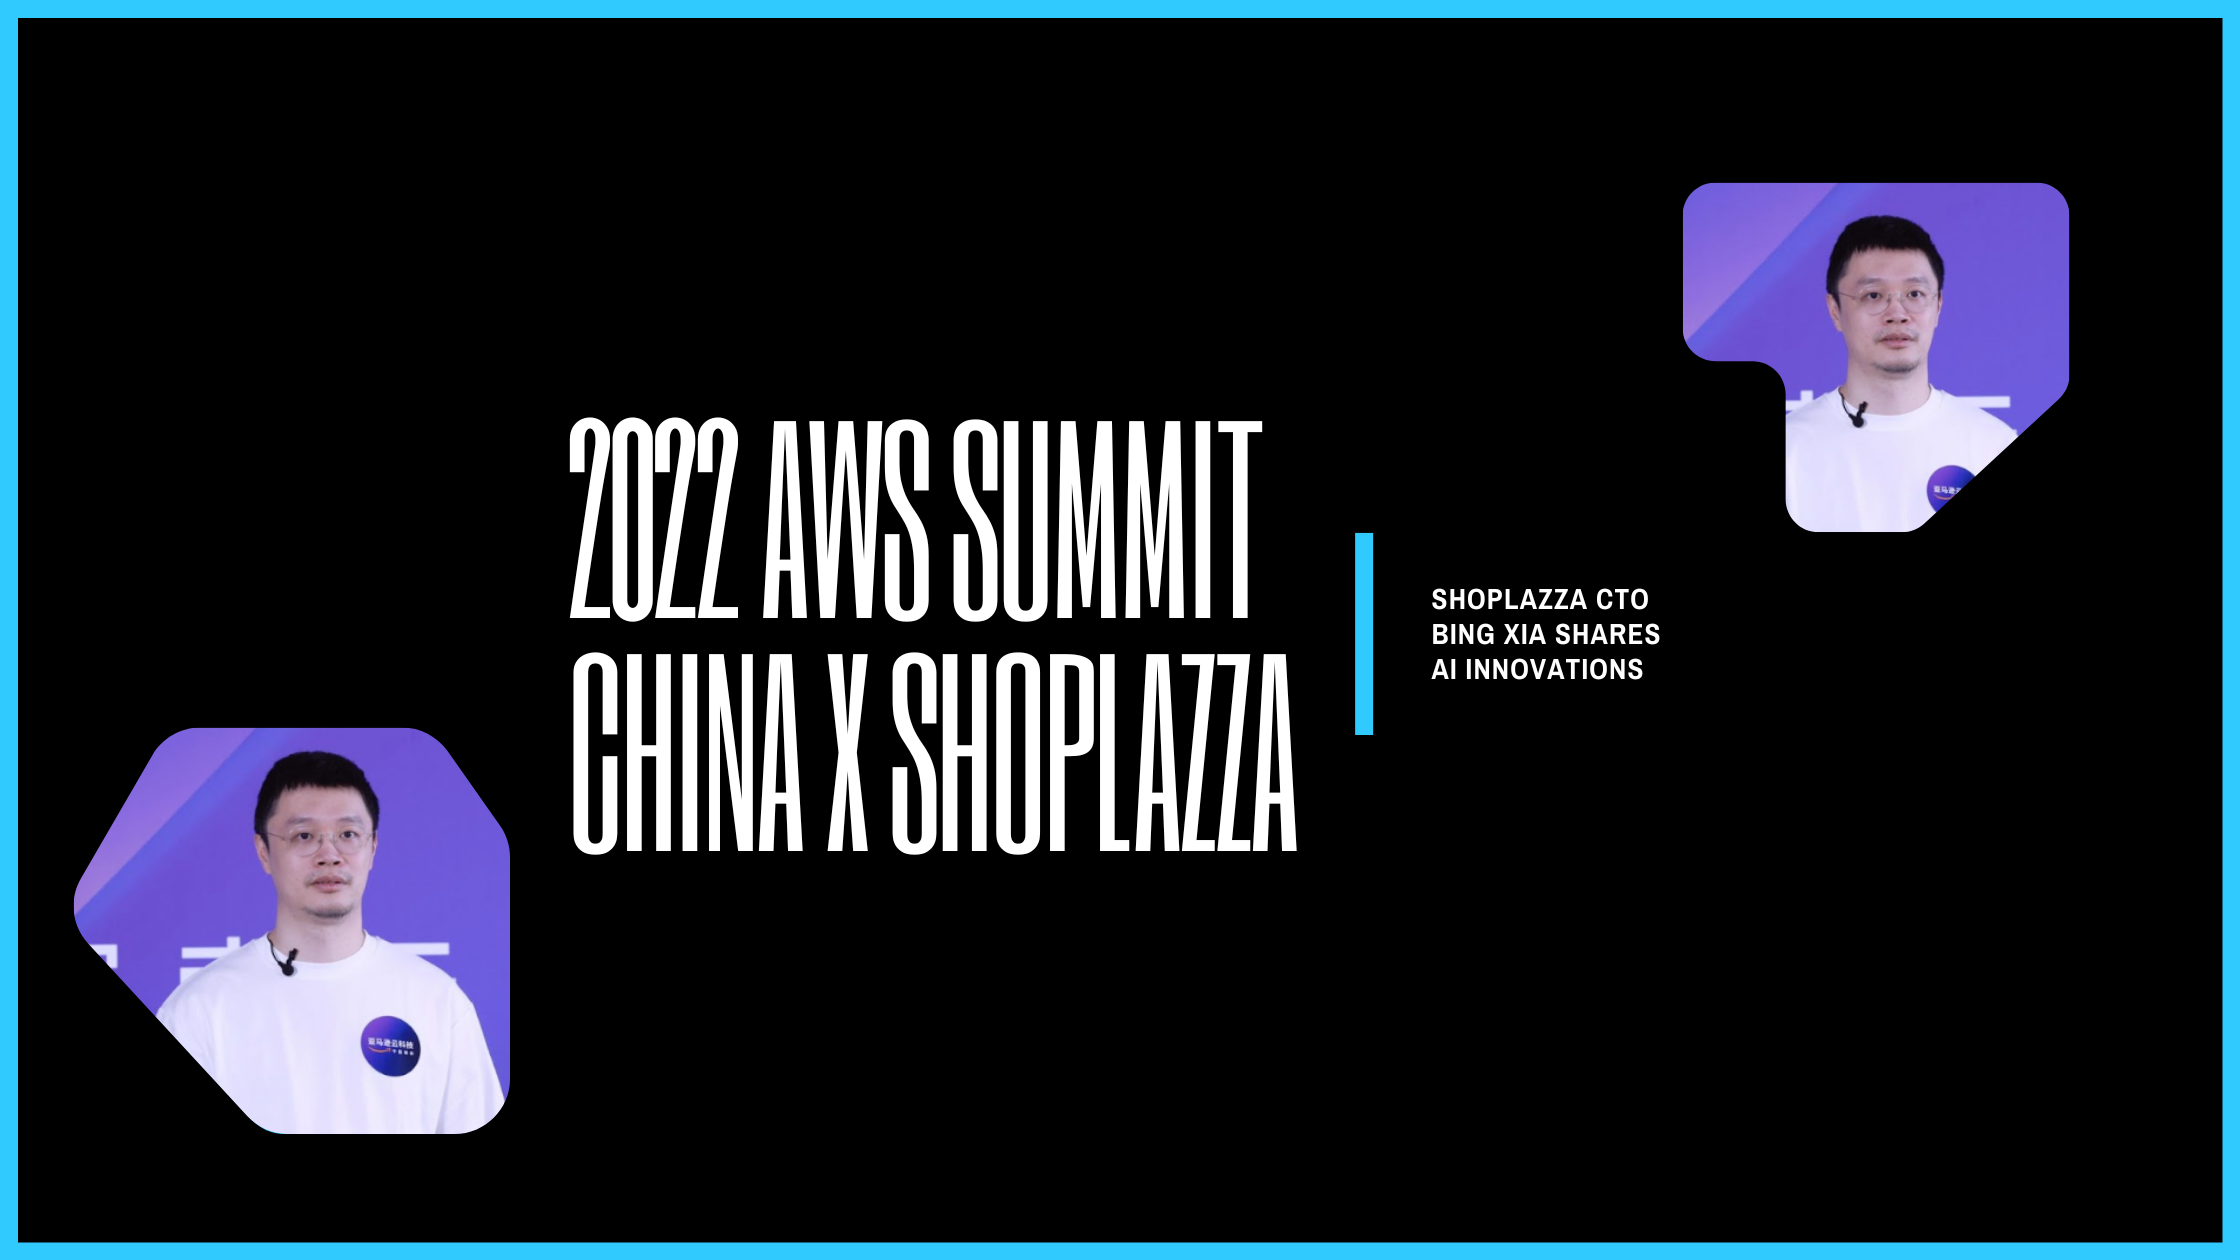 Bing Xia at the 2022 AWS Summit China.